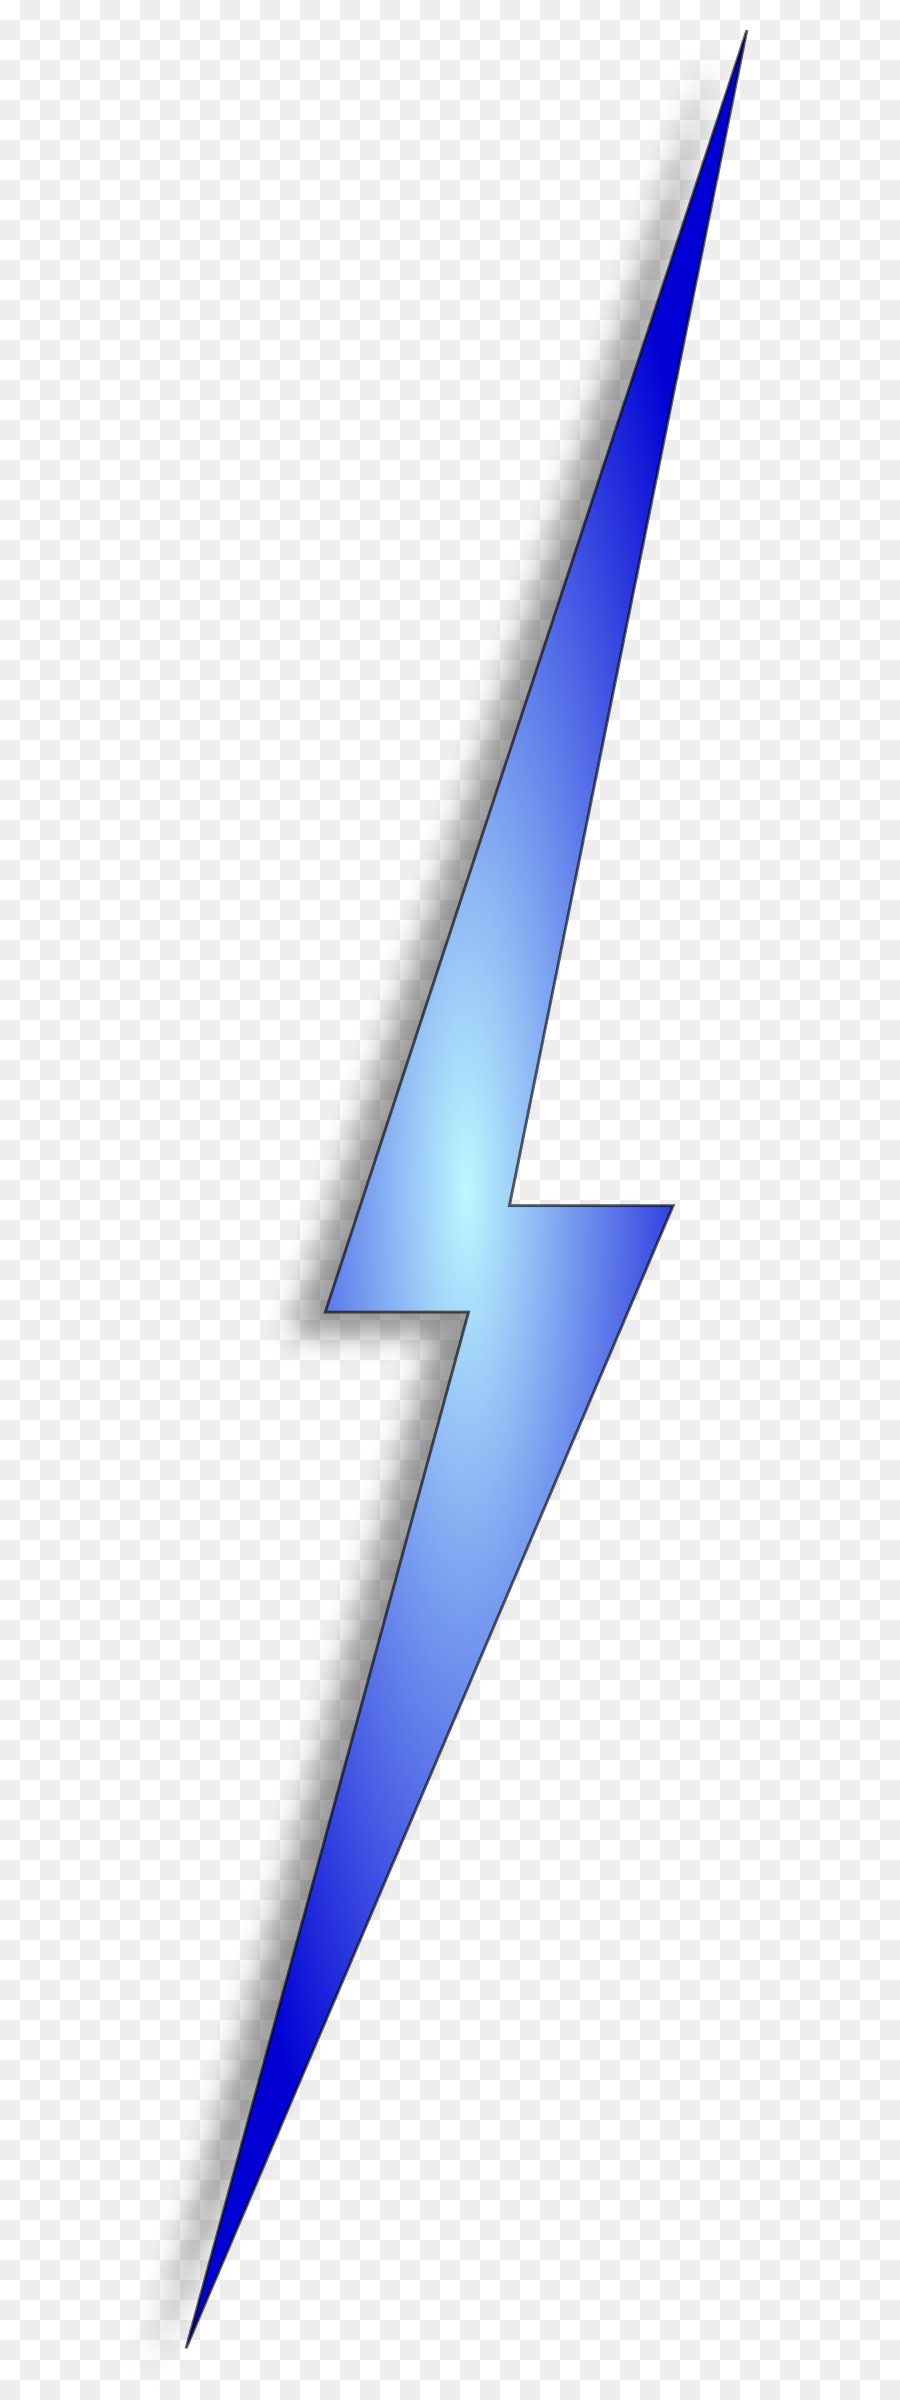 Lightning strike Electricity Clip art - bolt png download - 654*2400 - Free Transparent Lightning png Download.